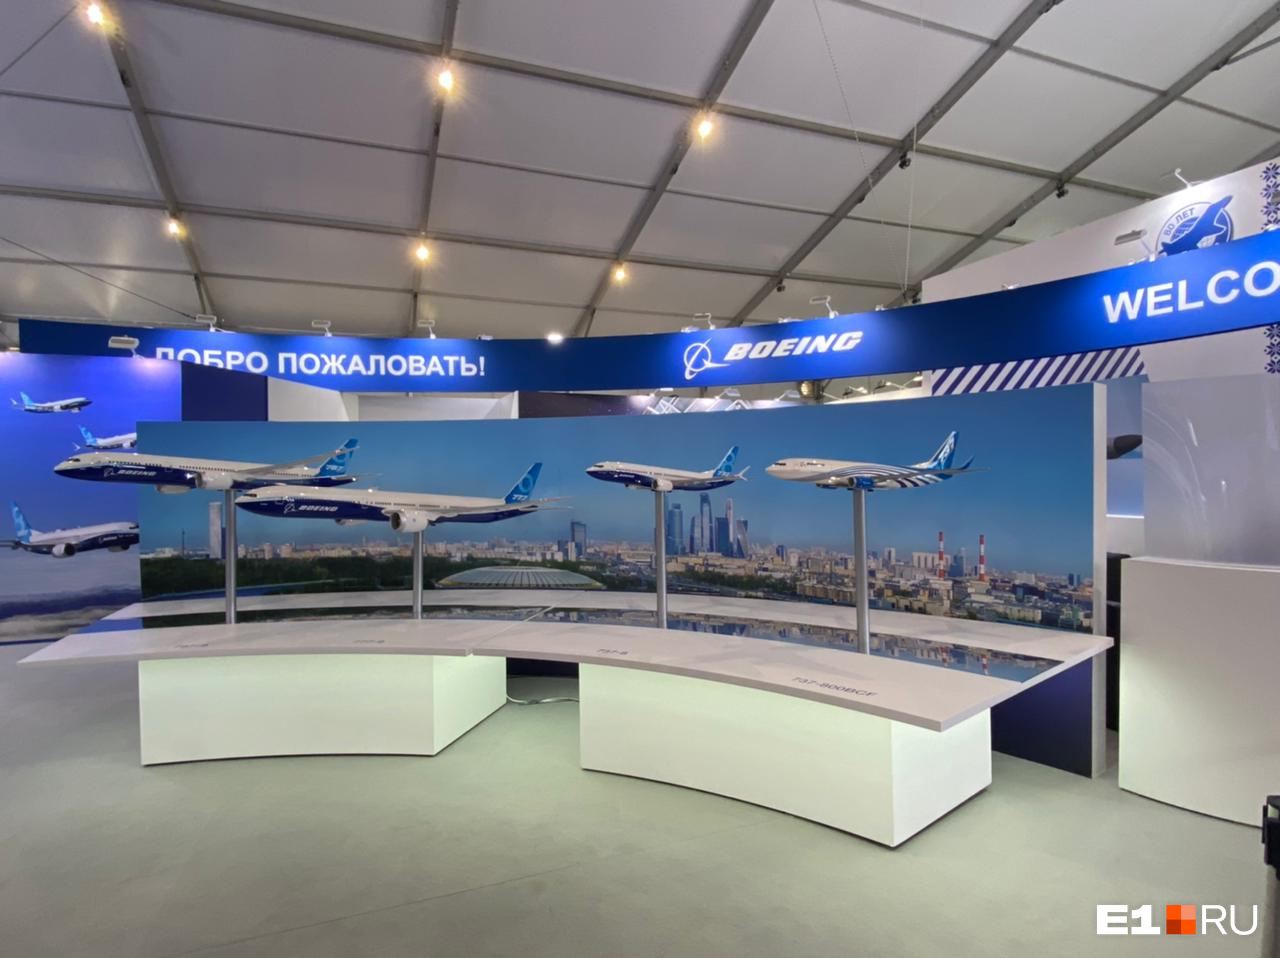 Экспозиция корпорации Boeing. Здесь представлены модели пассажирских воздушных судов семейств 737, 787, 777Х